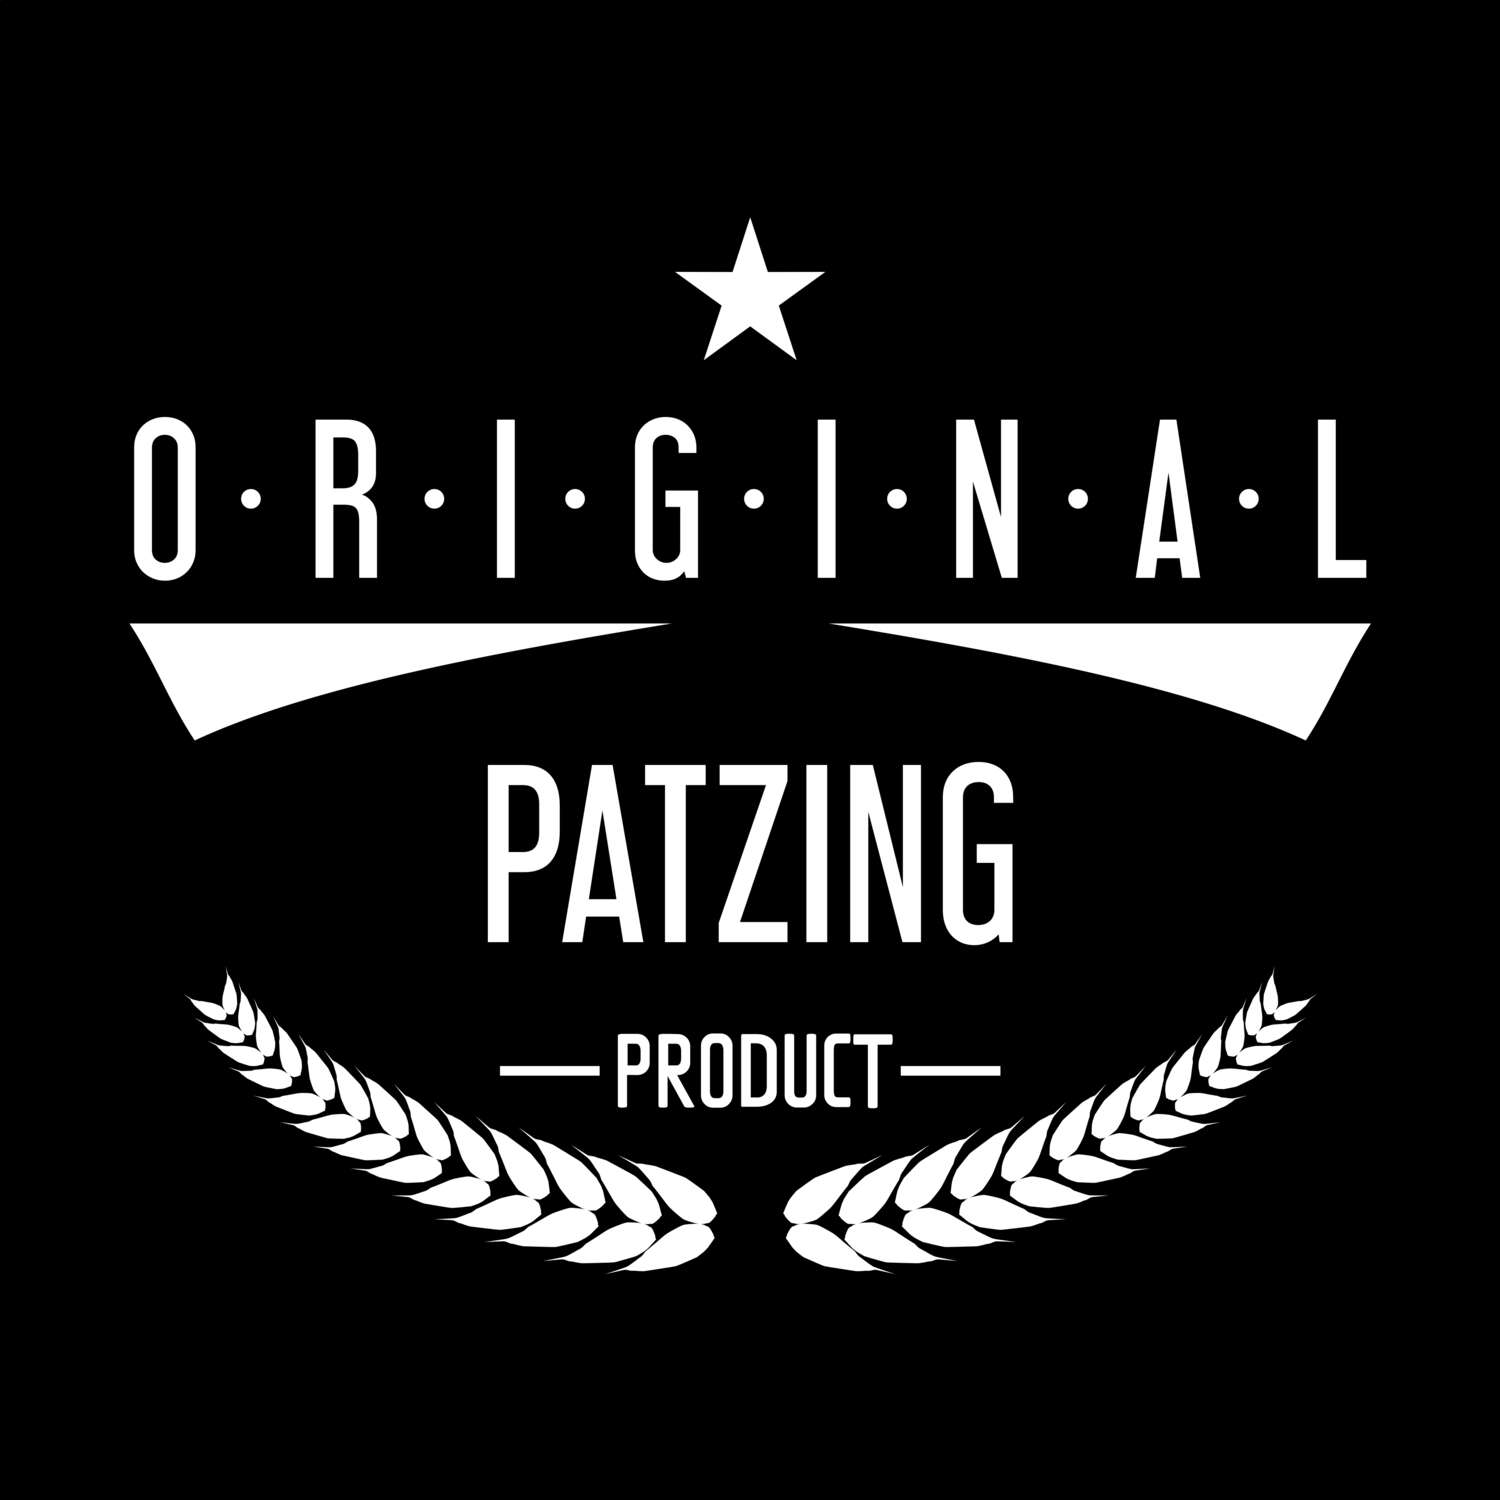 Patzing T-Shirt »Original Product«